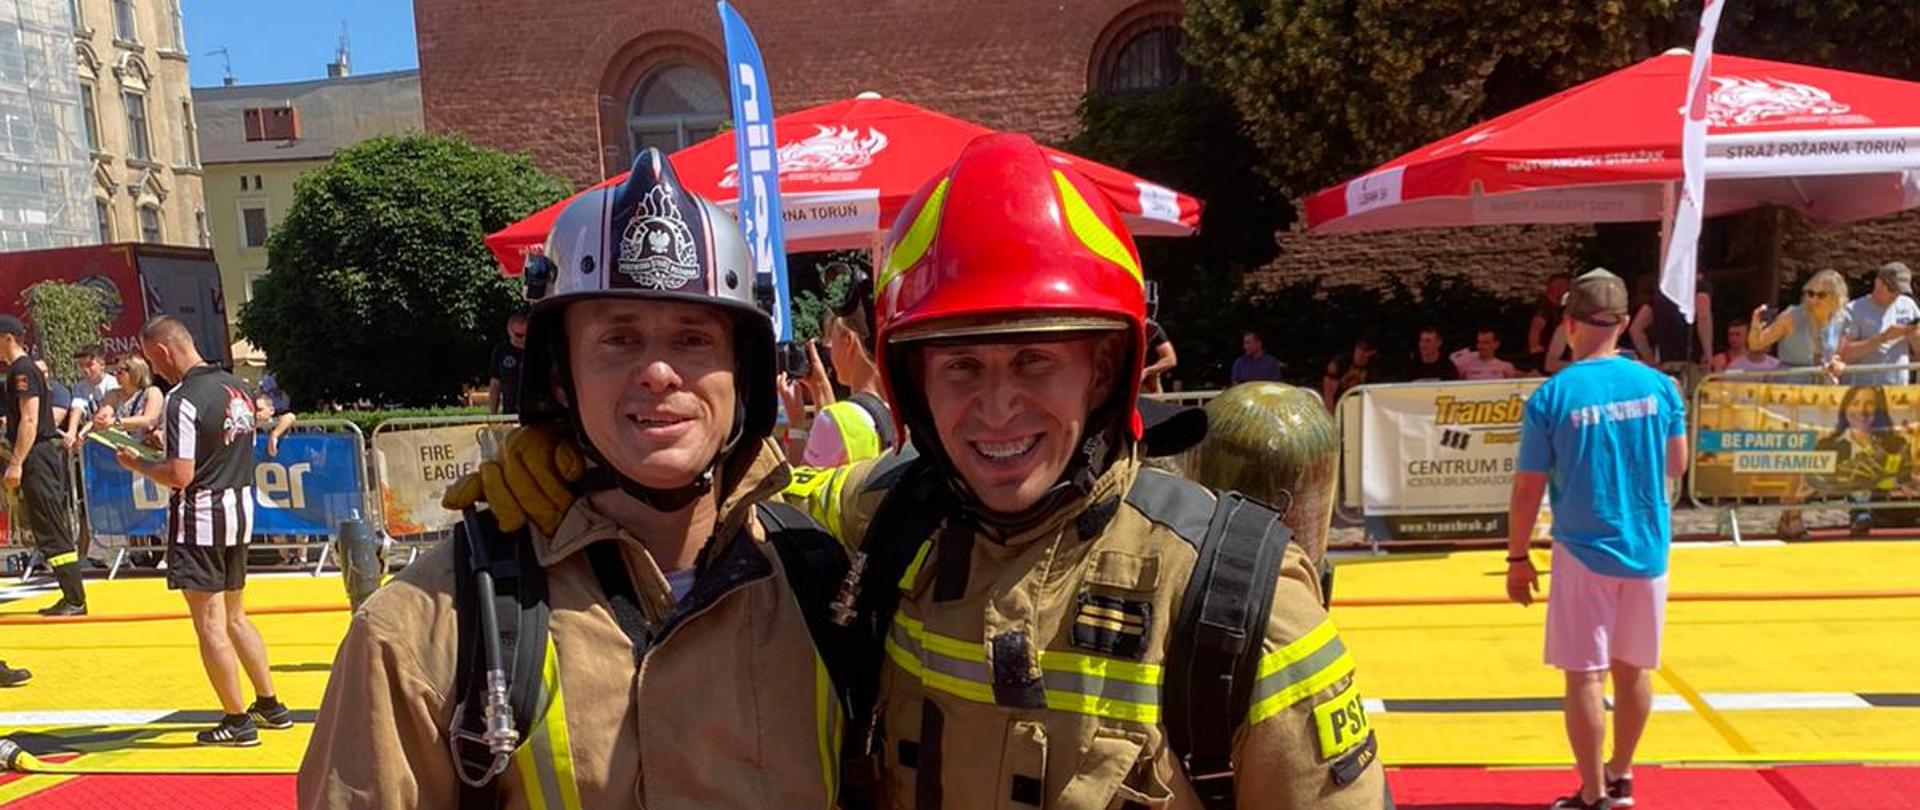 Zdjęcie przedstawia dwóch strażaków pozujących do zdjęcia na czerwonym dywanie ubranych w ubrania specjalne z hełmami na głowach.